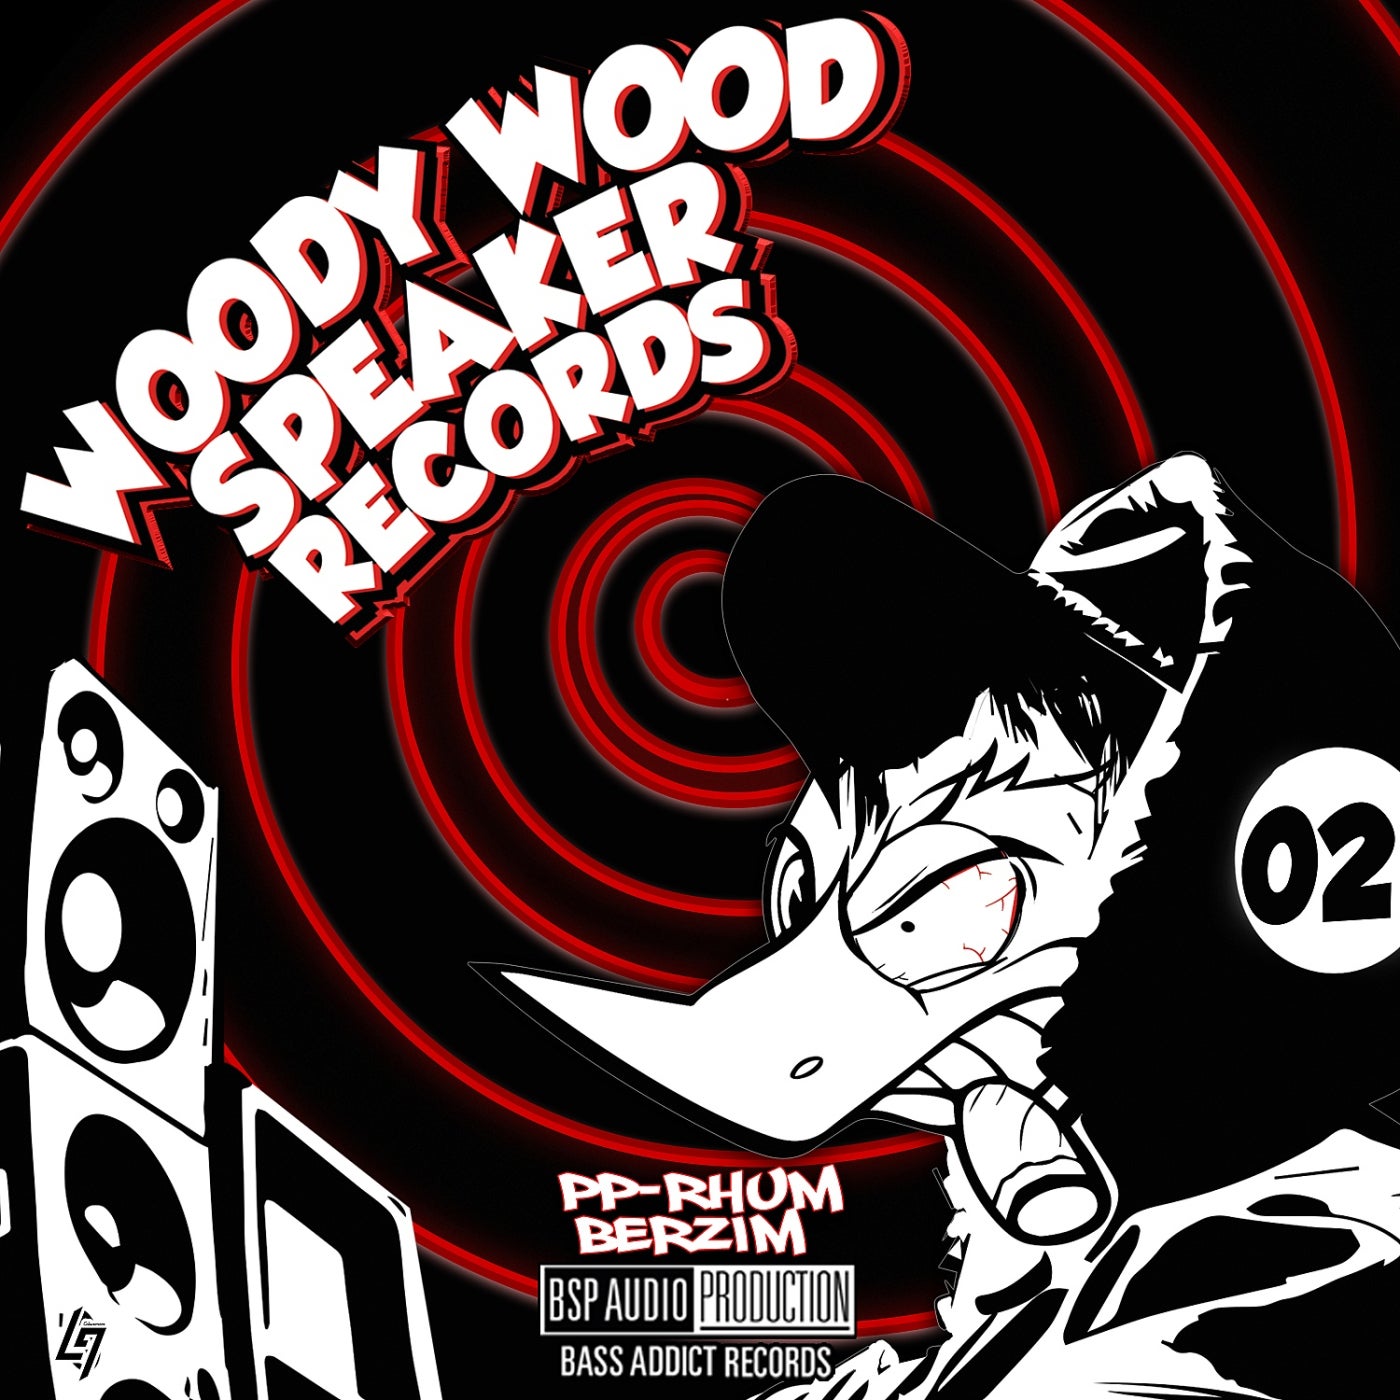 Woody Wood Speaker Records 02